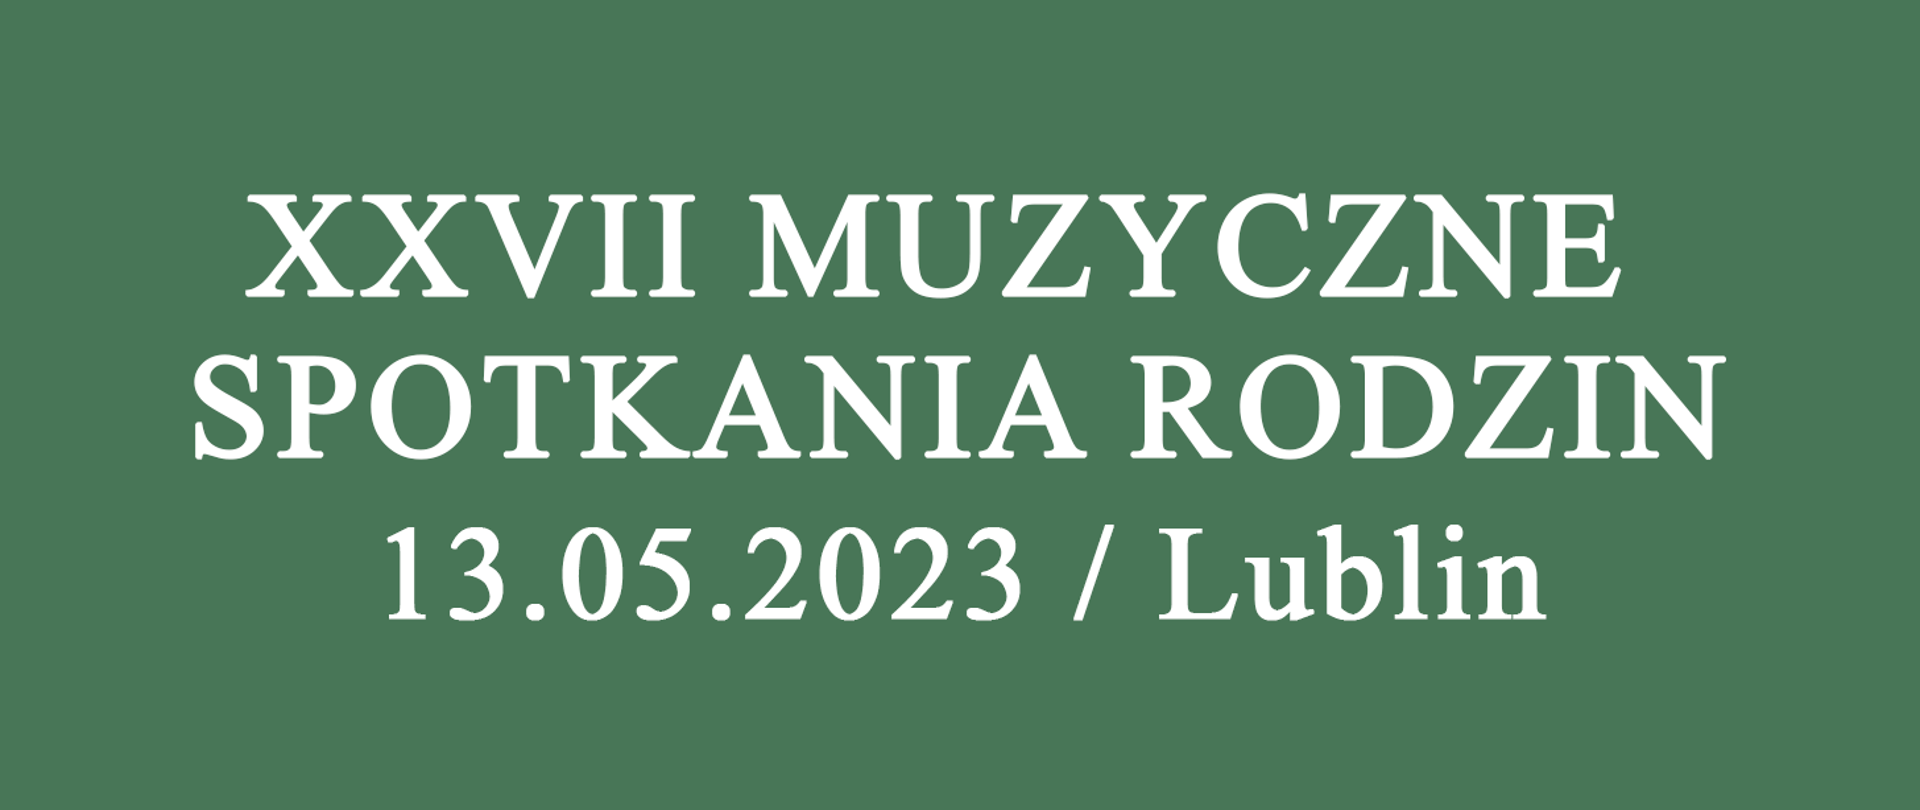 XXVII Muzyczne Spotkania Rodzin 13.05.2023 Lublin